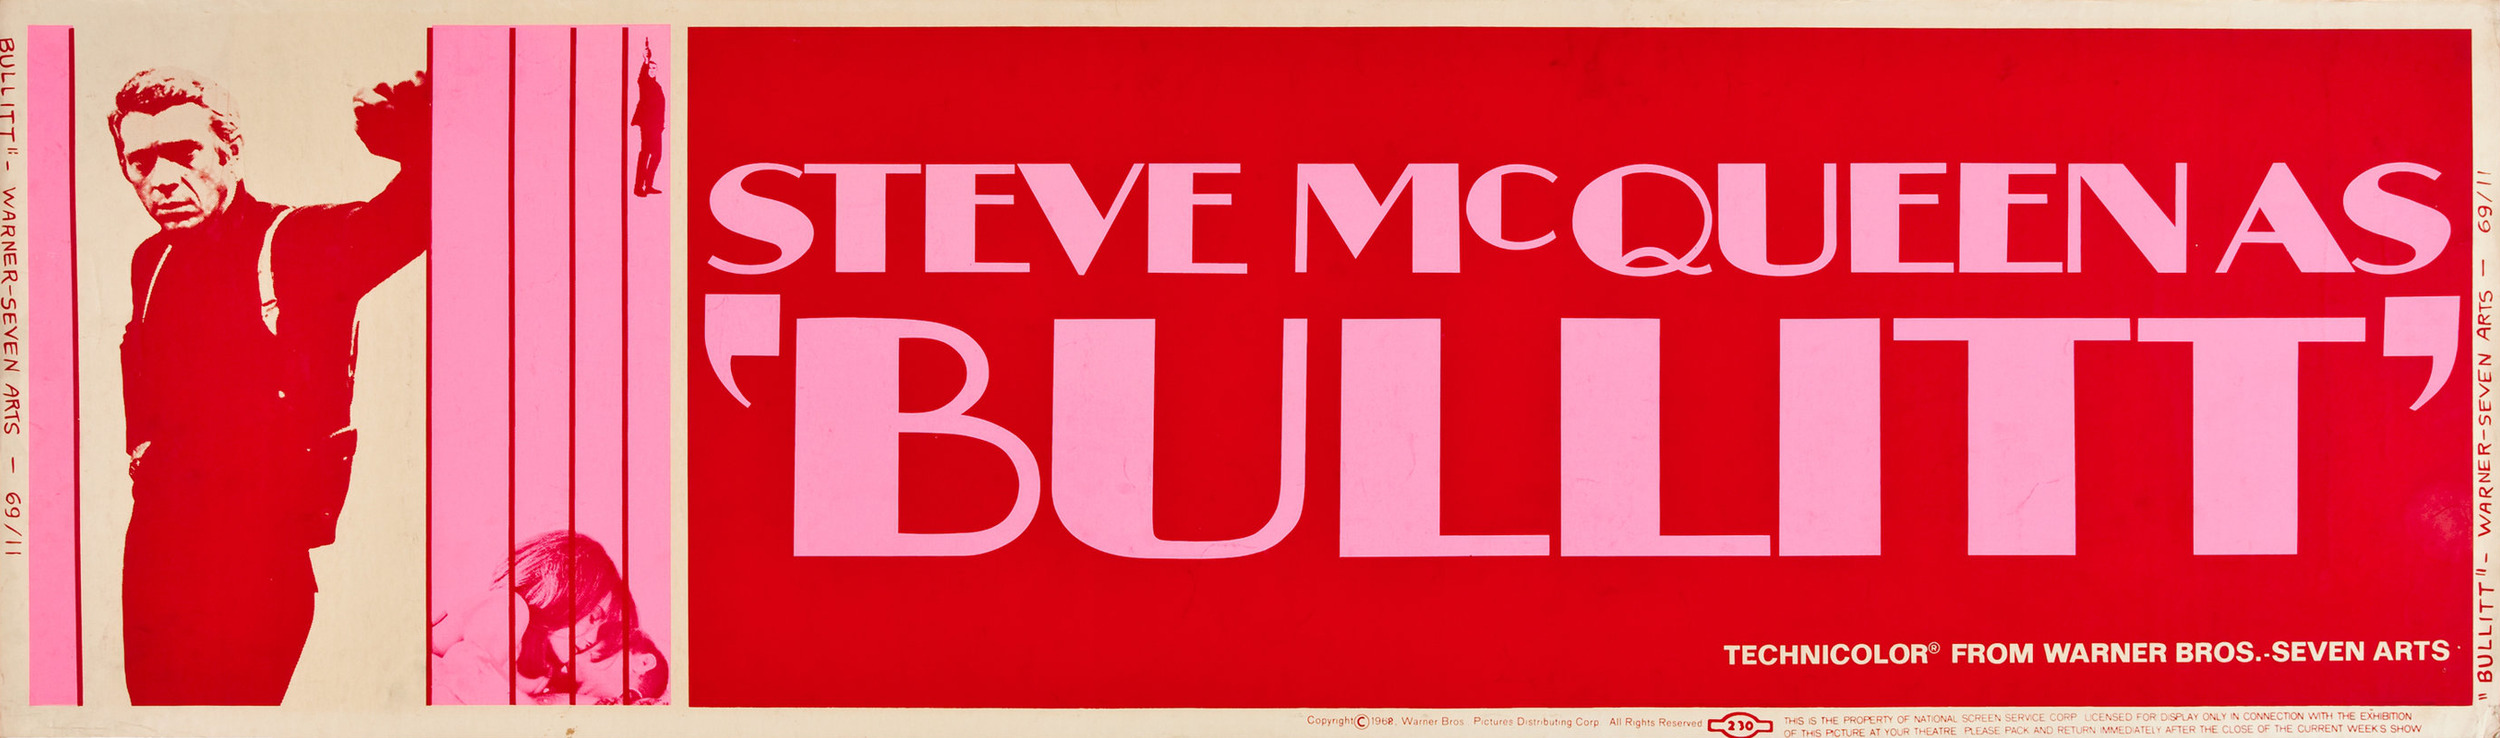 Mega Sized Movie Poster Image for Bullitt (#6 of 19)